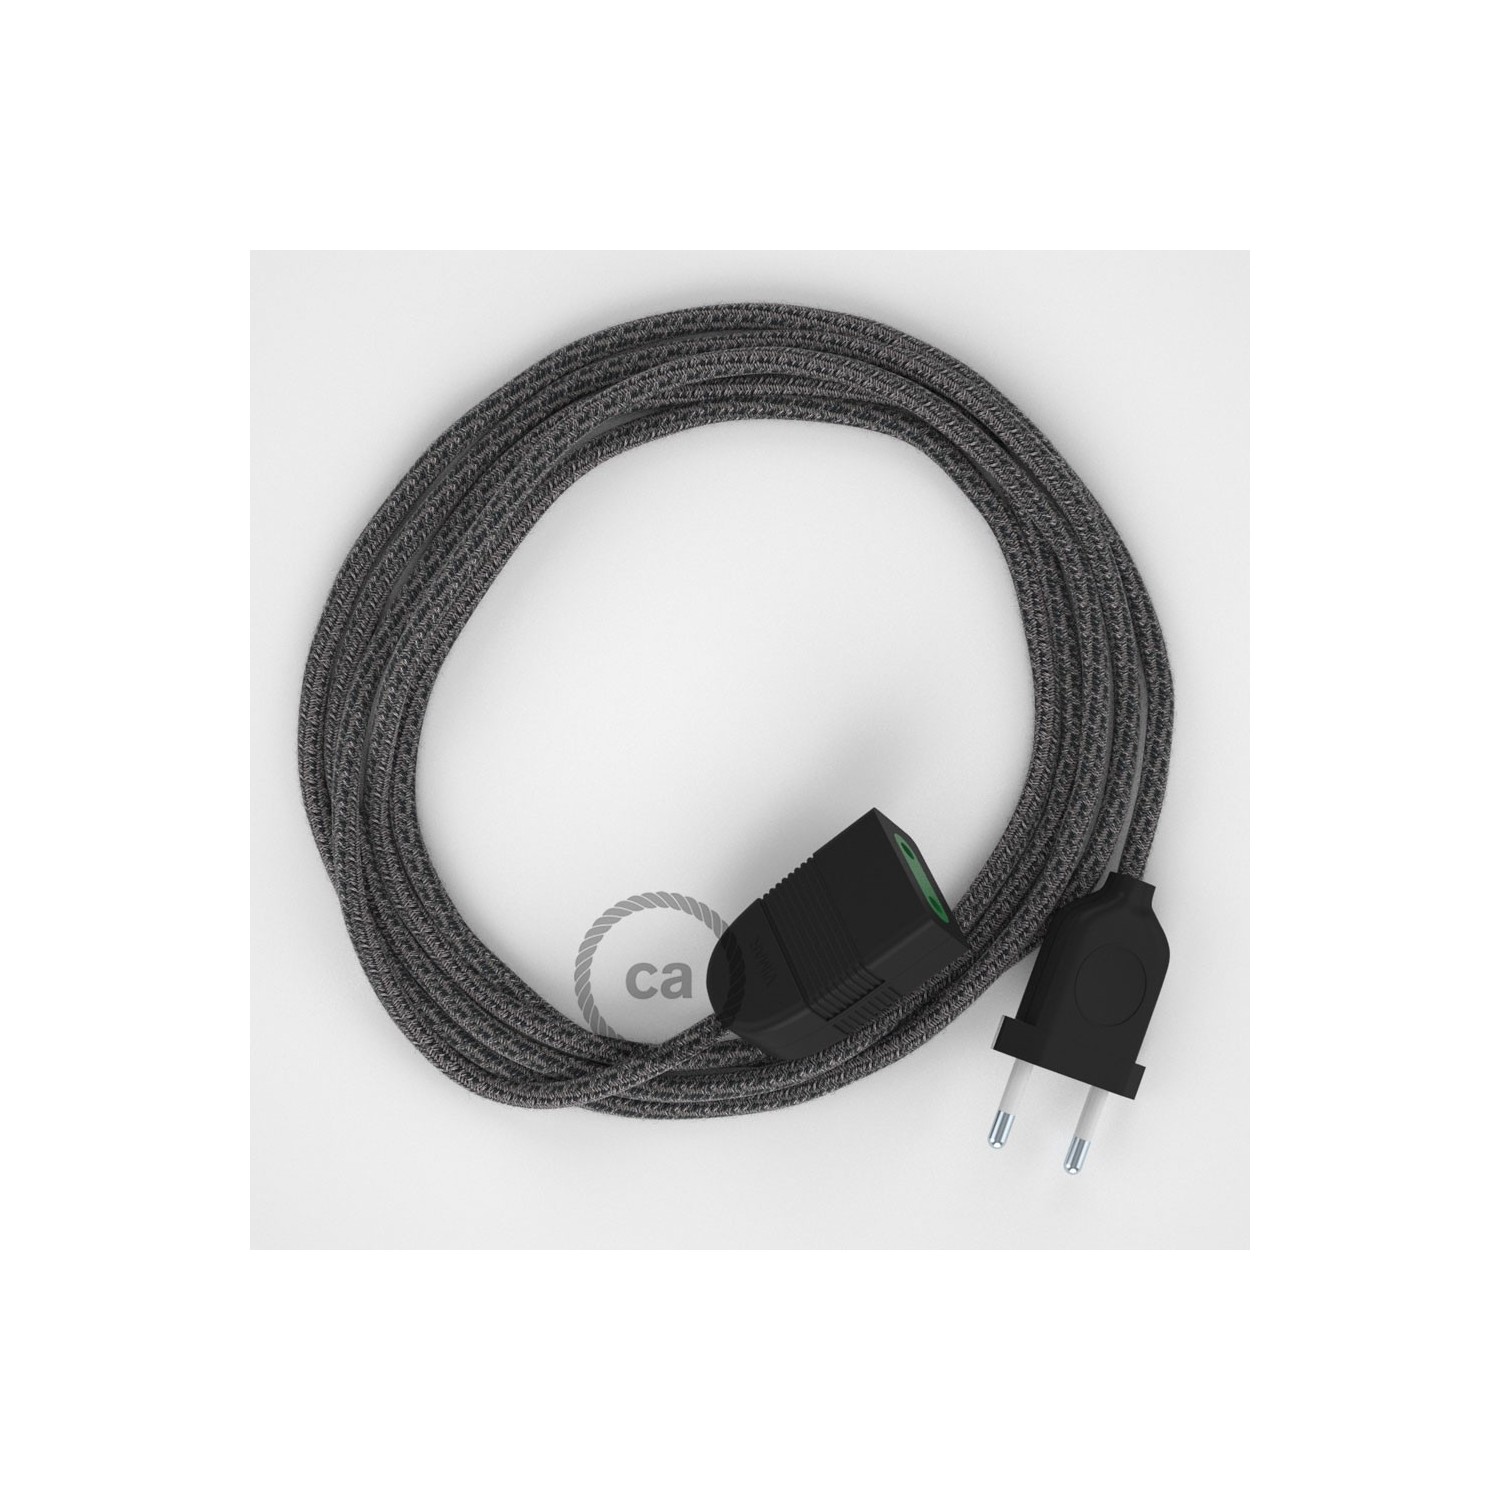 Rallonge électrique avec câble textile RS81 Coton et Lin Naturel Noir 2P 10A Made in Italy.